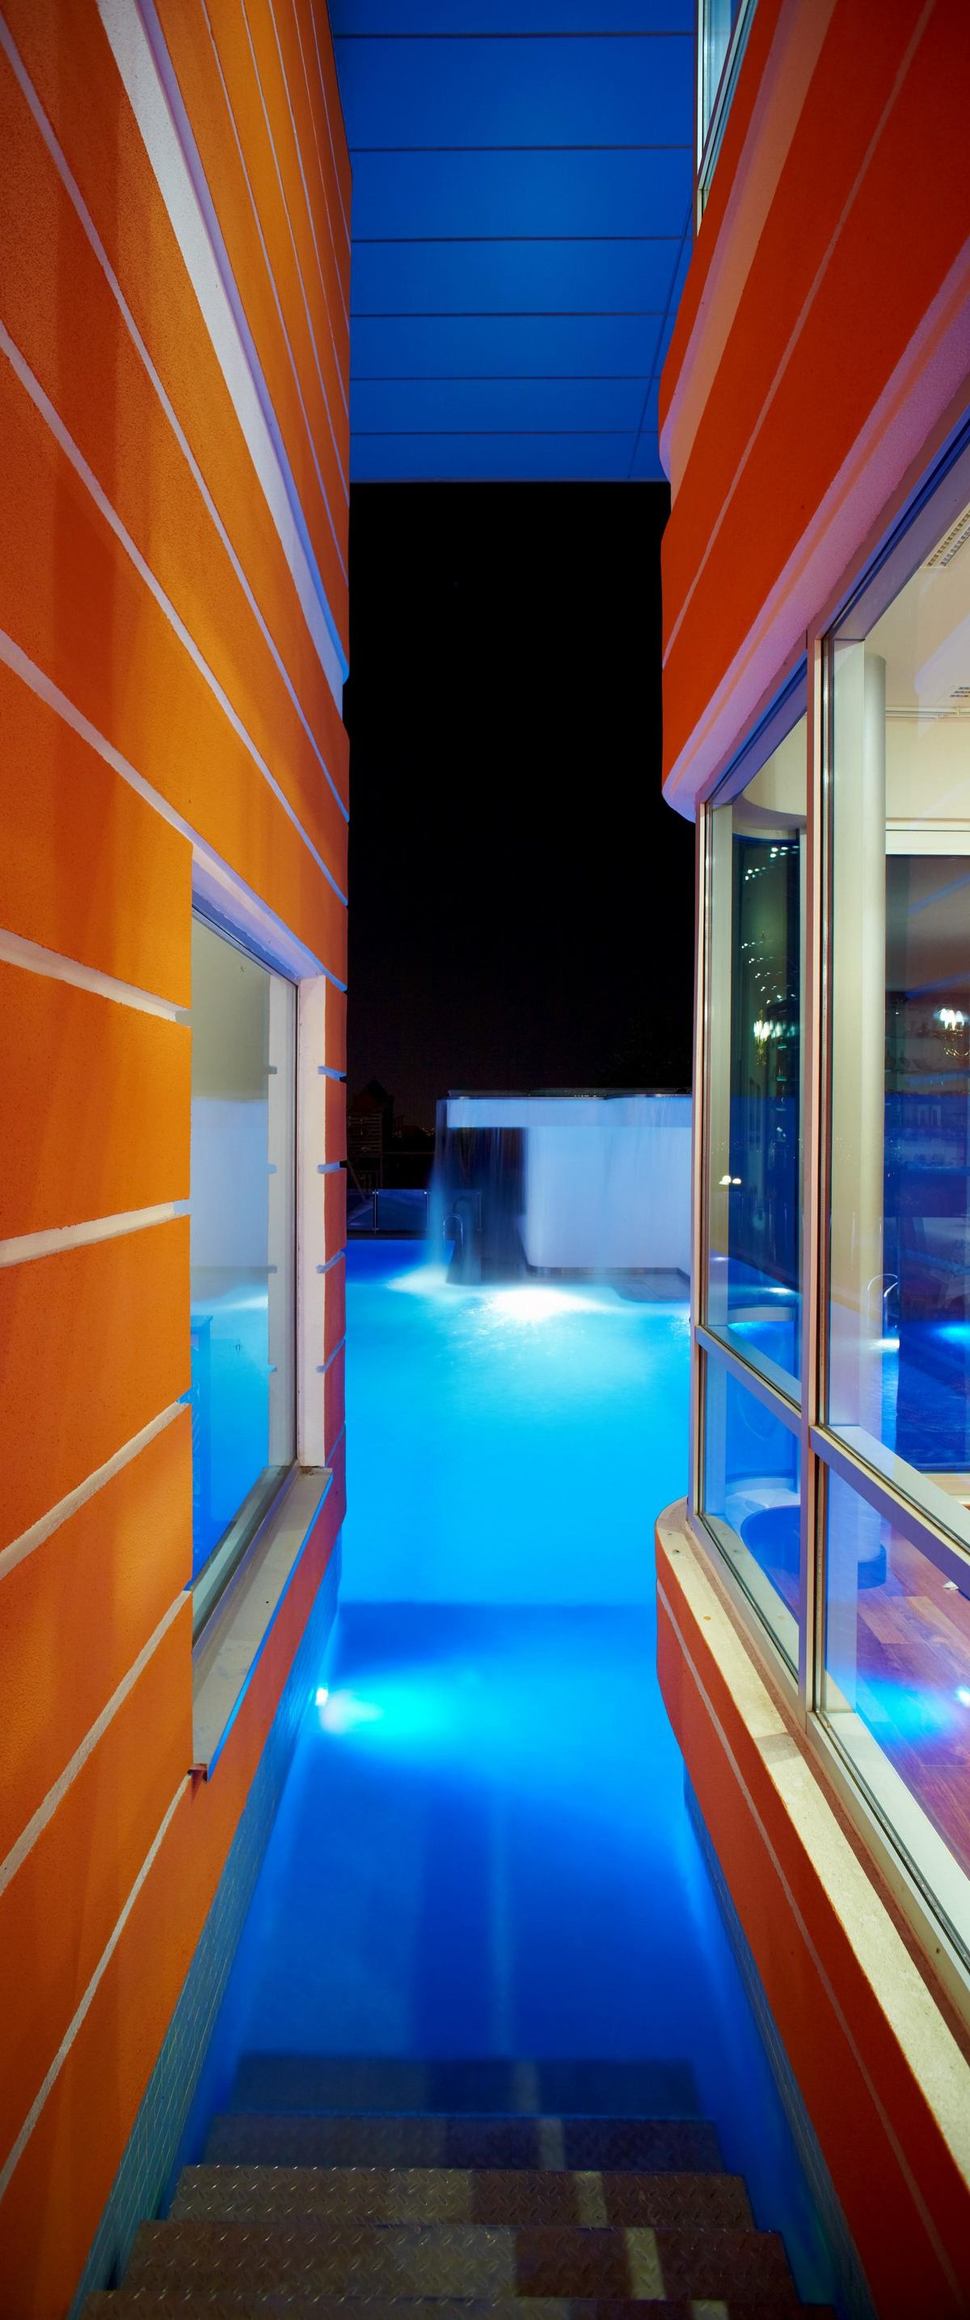 ultramodern-house-with-vibrant-lighting-design-focus-7-stairs-inside.jpg